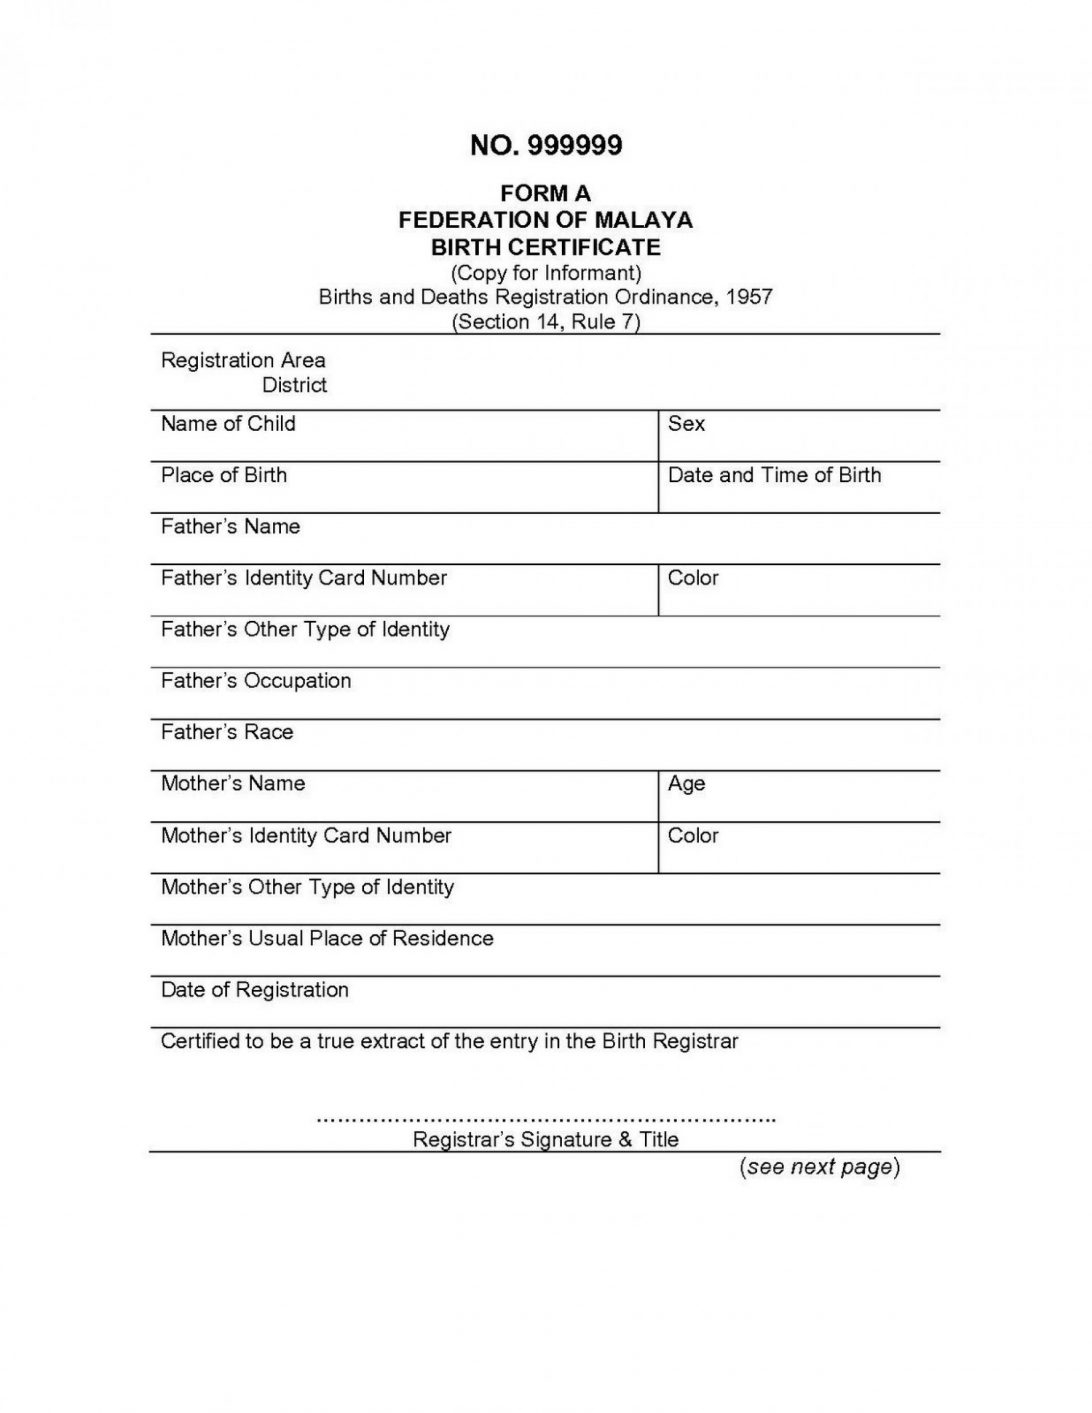 Marriage Certificate Template Keepsake Muslim Format India Inside Marriage Certificate Translation Template